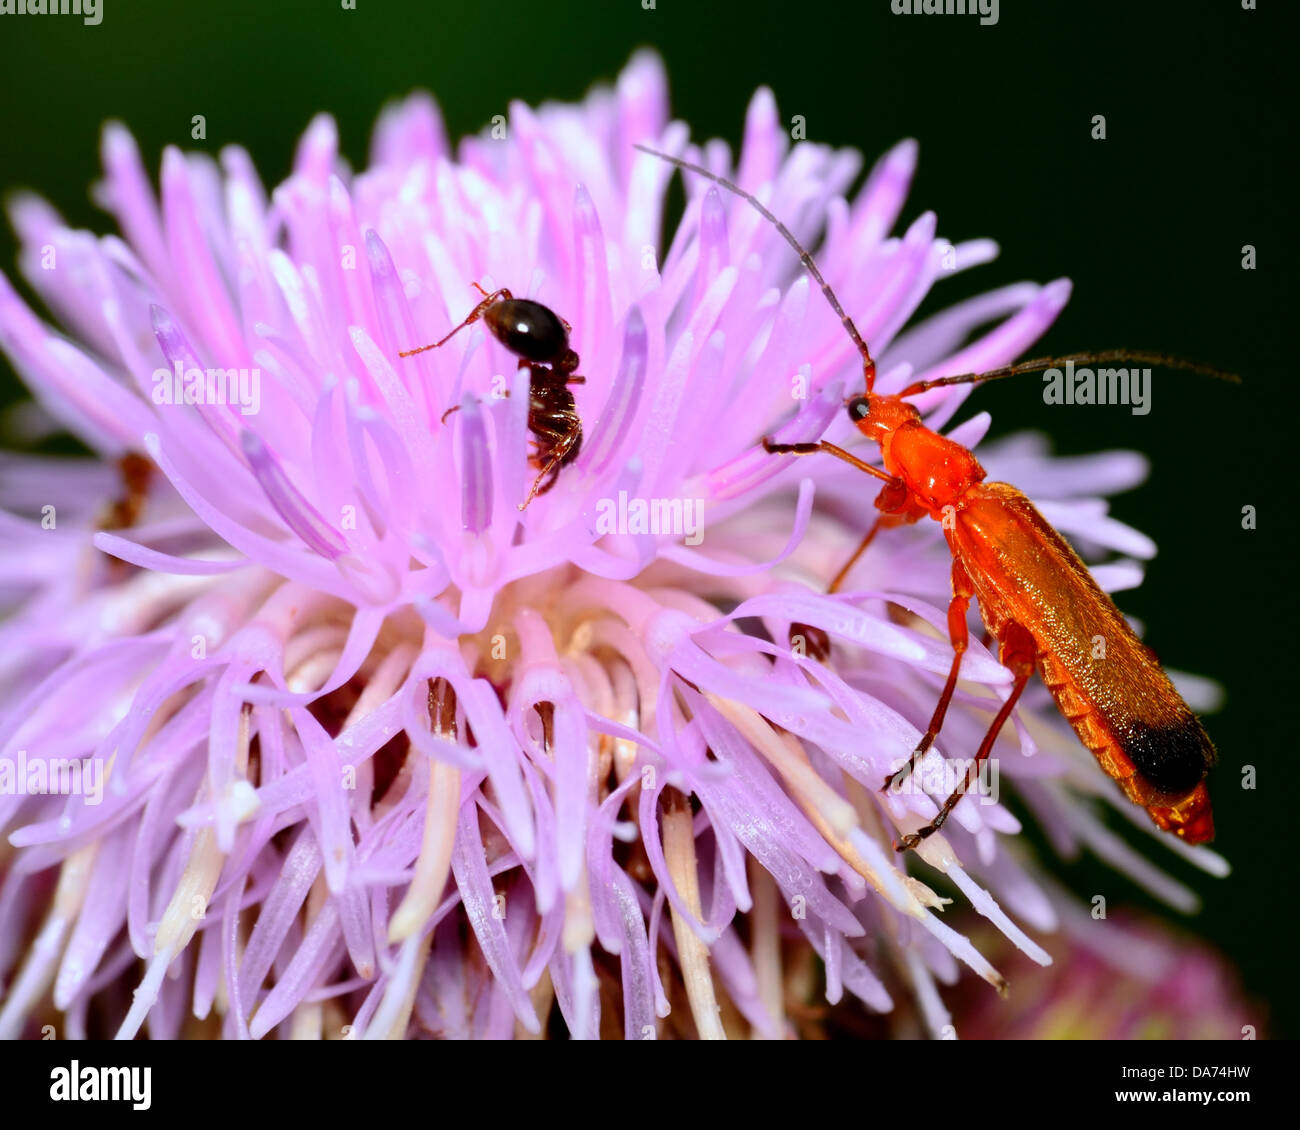 Soldat Beetle perché sur une fleur avec une fourmi. Banque D'Images